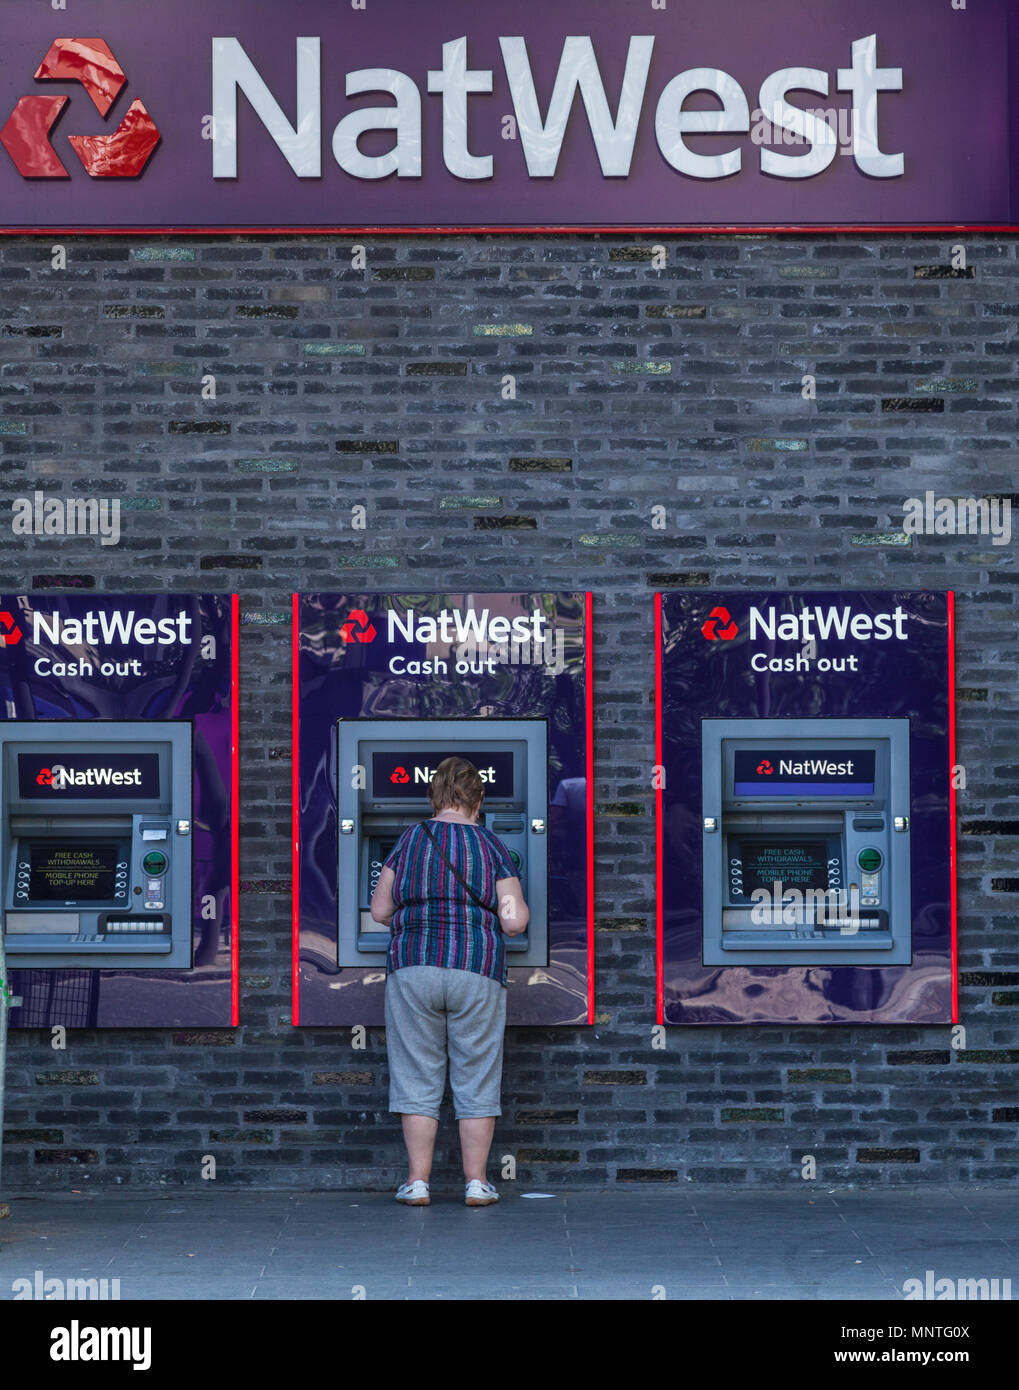 Mujer retirar efectivo de cajeros automáticos Natwest en Londres Foto de stock